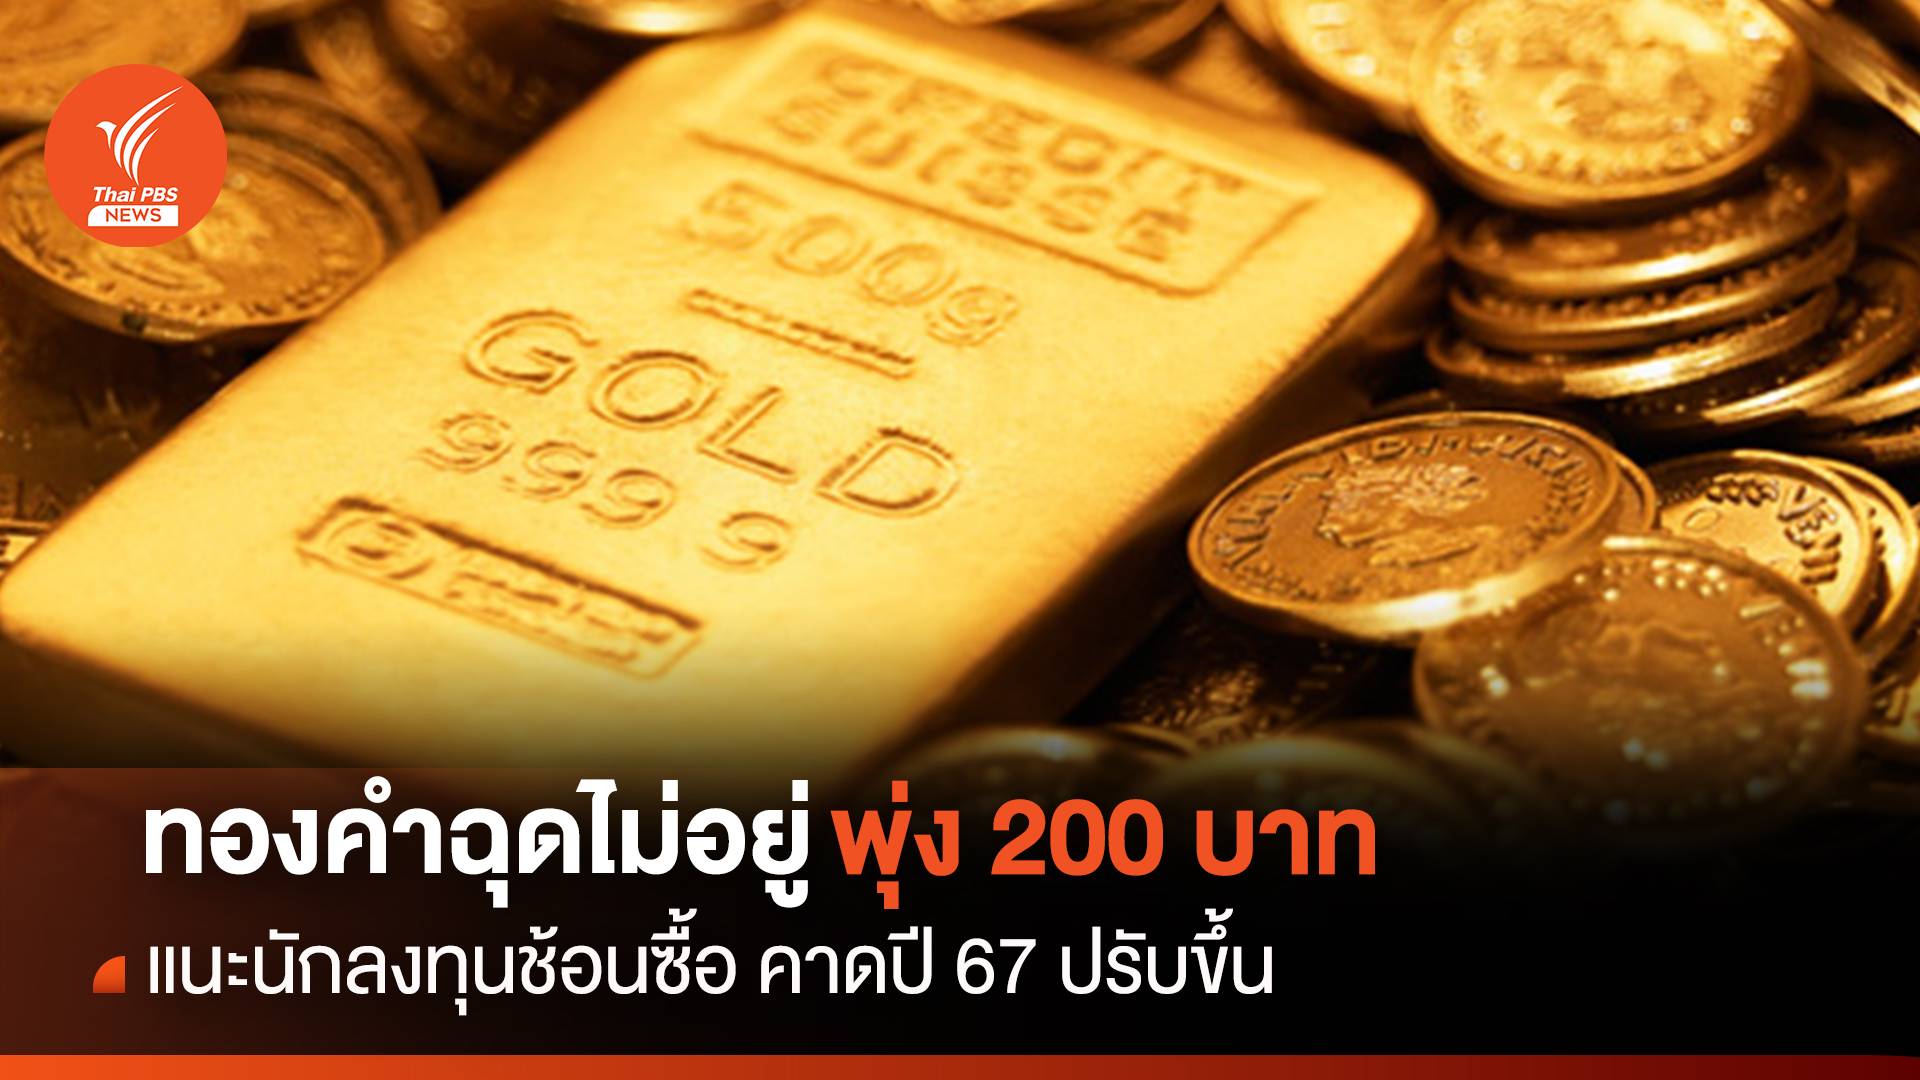 ทองคำฉุดไม่อยู่พุ่ง 250 บาท คาดปี 67 ปรับขึ้น แนะนักลงทุนช้อนซื้อ 